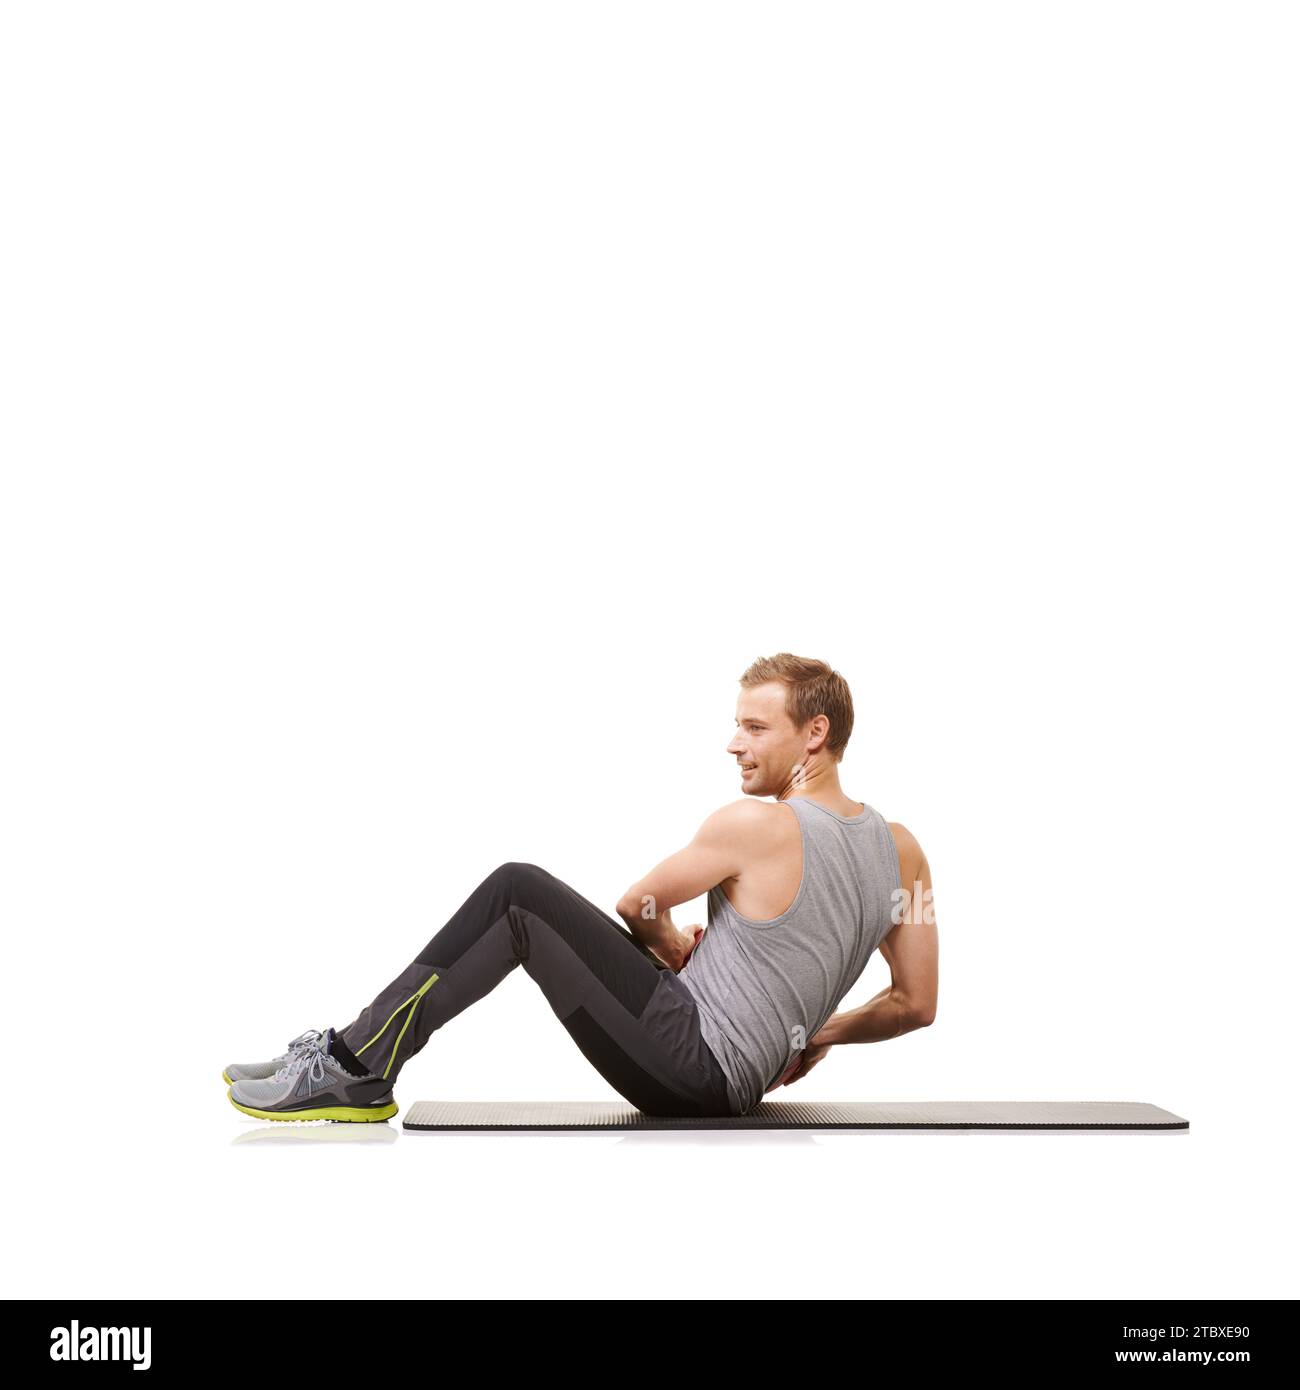 Mann, Medizinball und Drehmatte für Trainingsübungen im Studio auf weißem Hintergrund, Fitness- oder Workout-Kraft. Männliche Person, Sportausrüstung Stockfoto